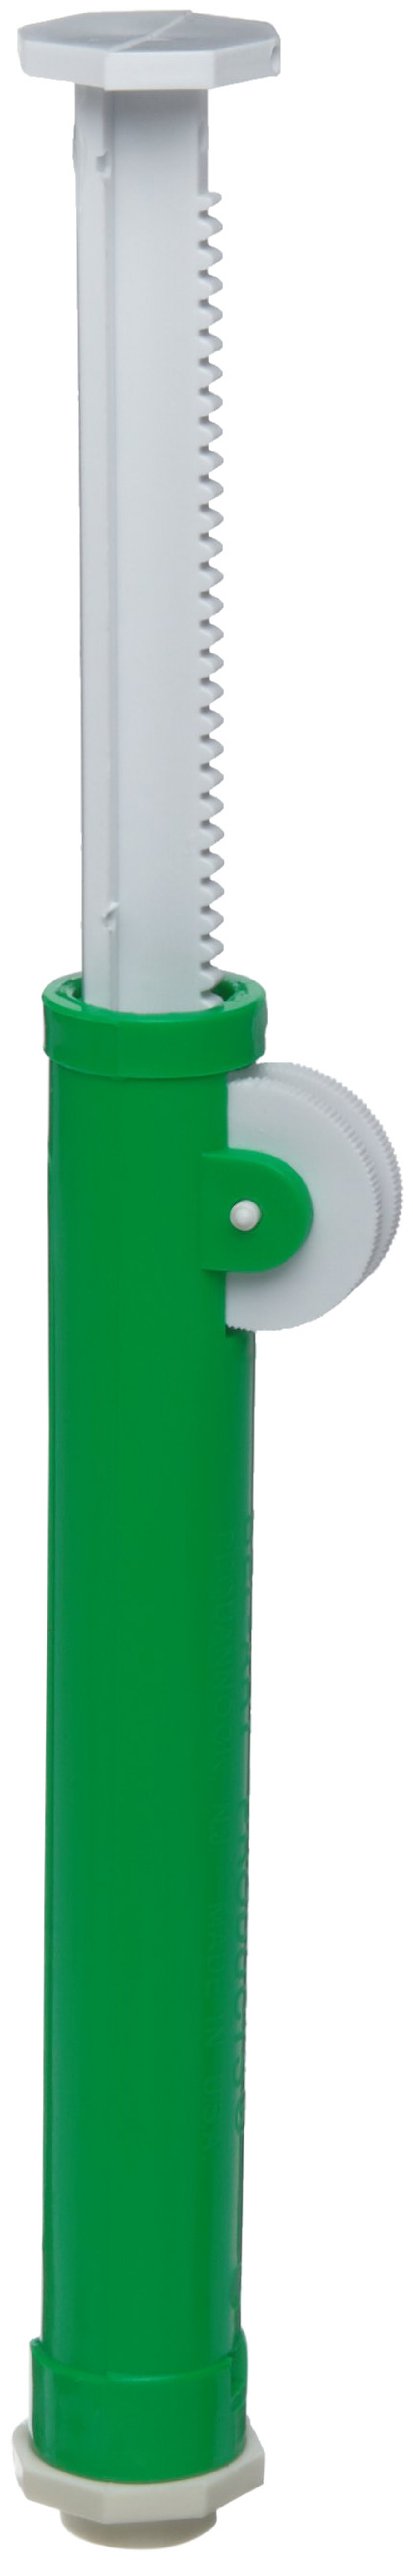 Pipettierer Pipet Pump Standard für Pipetten, 10 ml